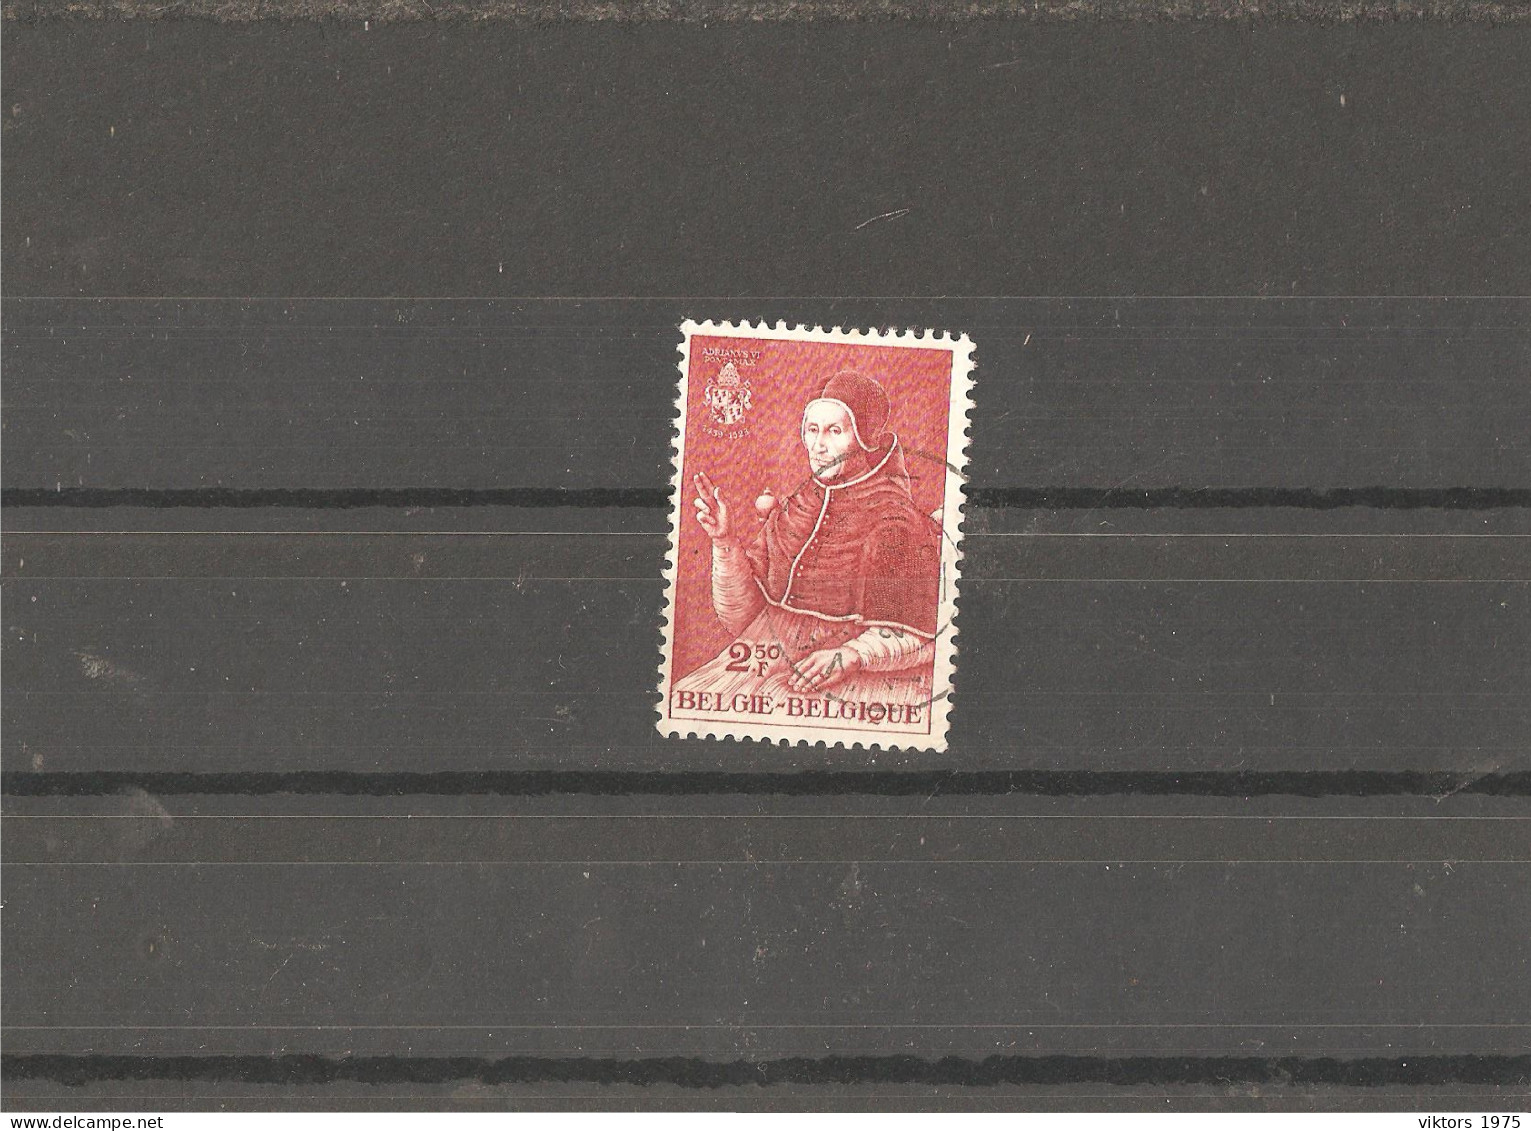 Used Stamp Nr.1162 In MICHEL Catalog - Usati